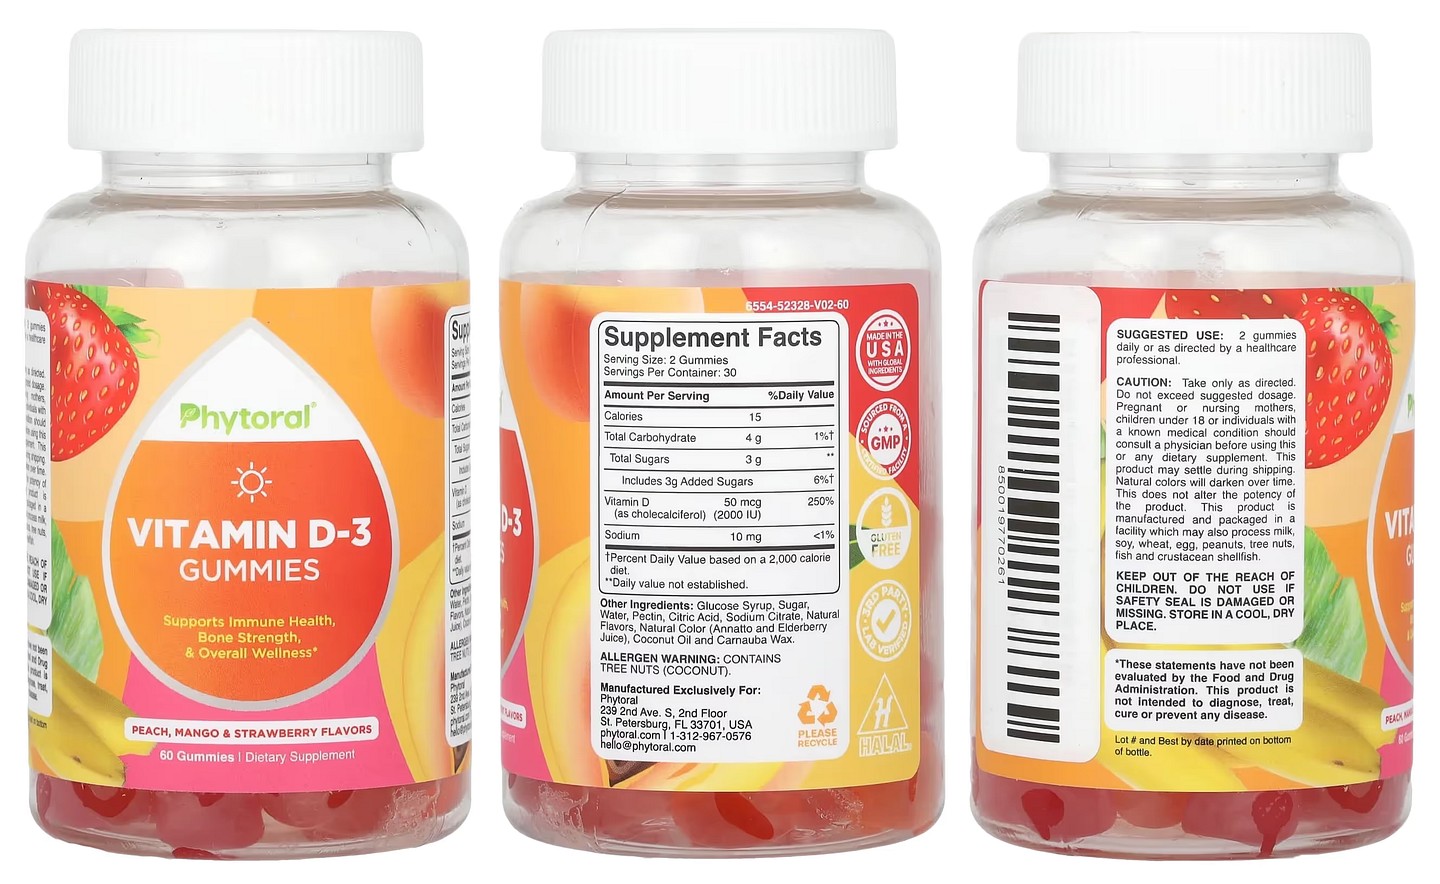 Phytoral, Vitamin D-3 Gummies packaging